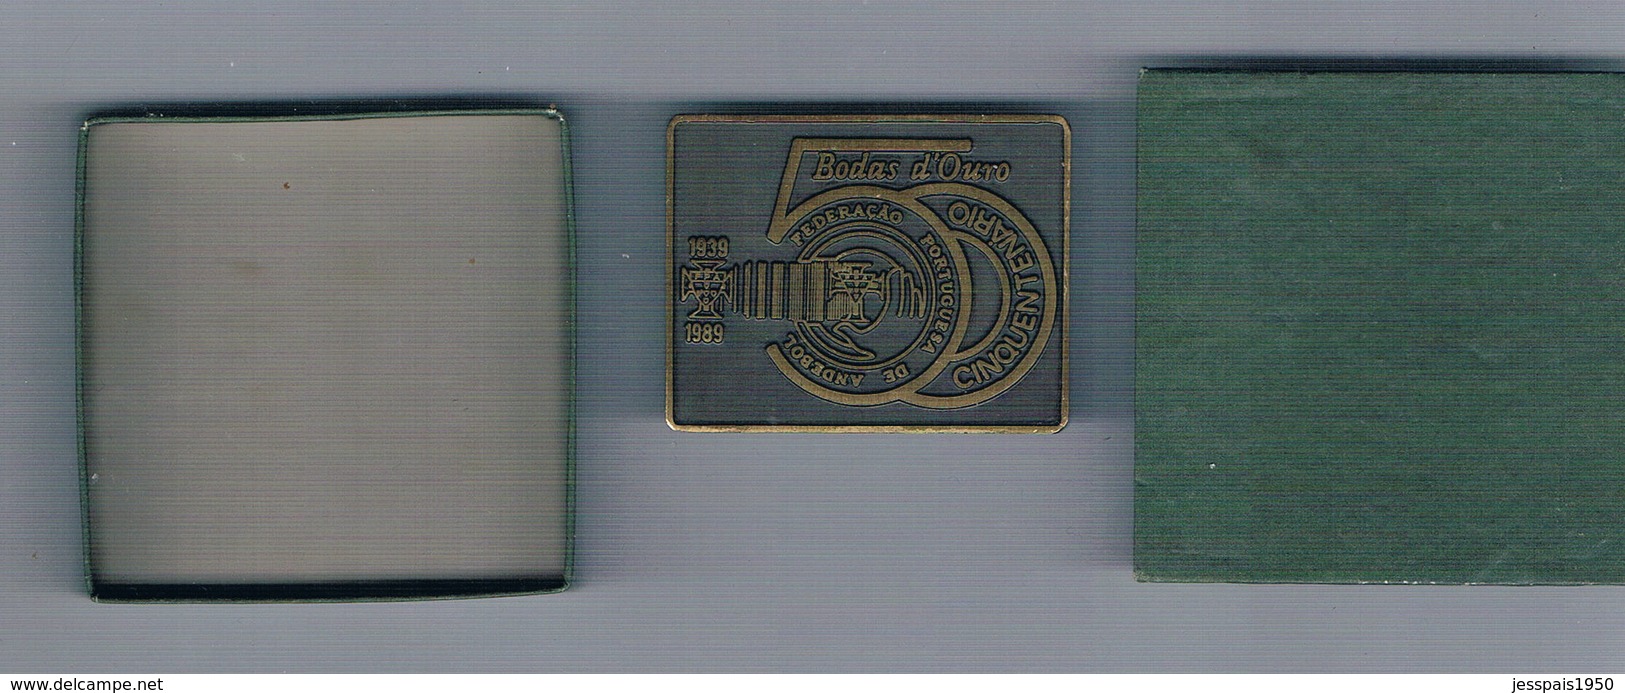 Medaille - Bodas D'ouro 1939/1989 - Cinquentenério Da Federação Portuguesa De Handeball - Balonmano